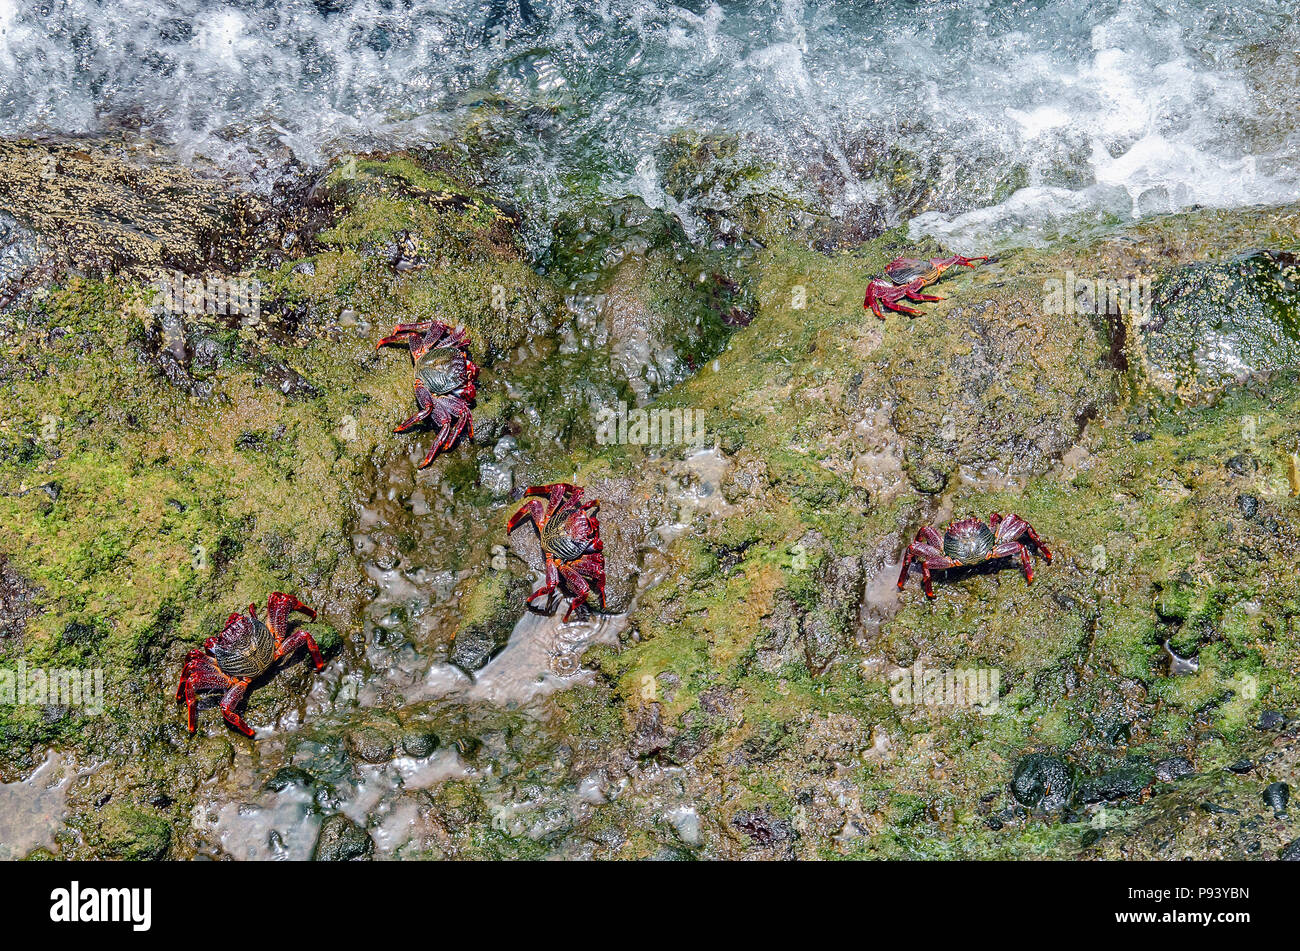 Paar bunte Lightfoot Krabben (Grapsus adscensionis) in ihrer natürlichen Umgebung - Küste Felsen von grünen Algen bedeckt. Bild an nationa Stockfoto